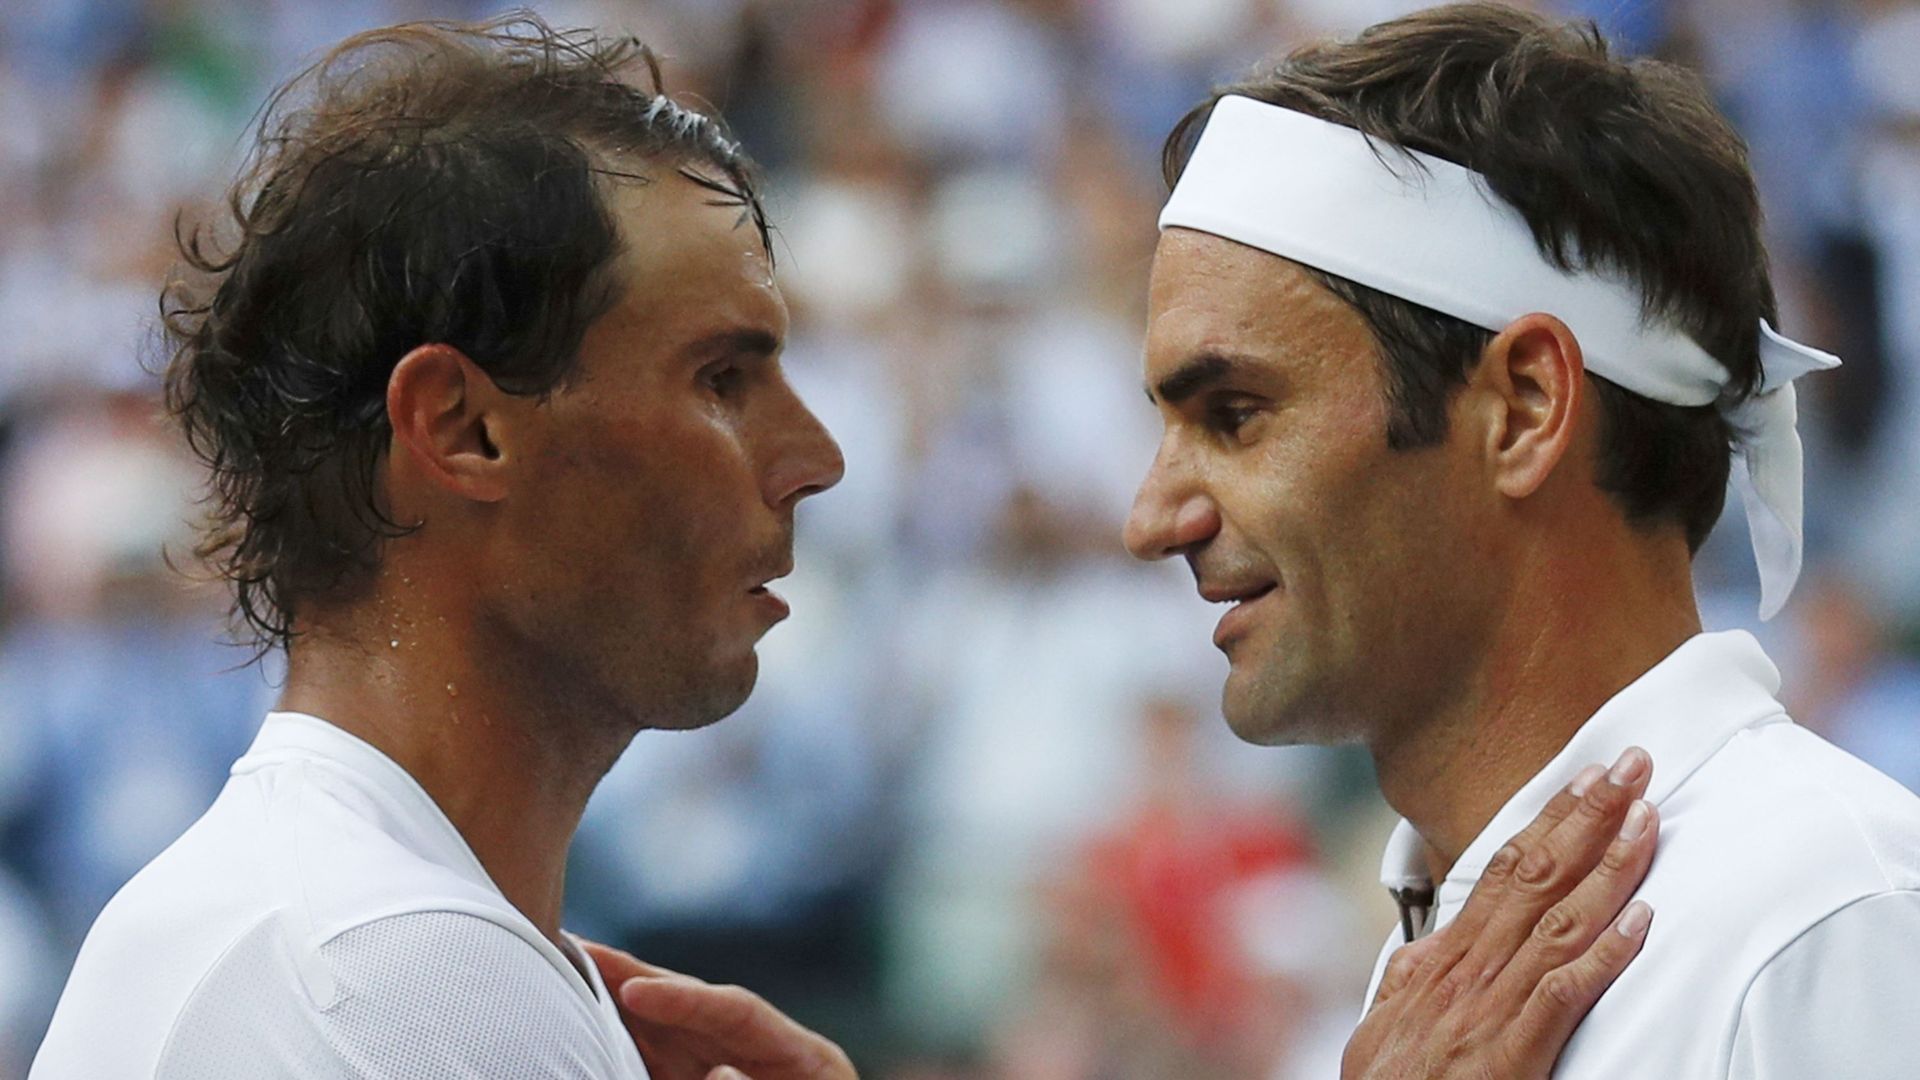 Rafael Nadal et Roger Federer